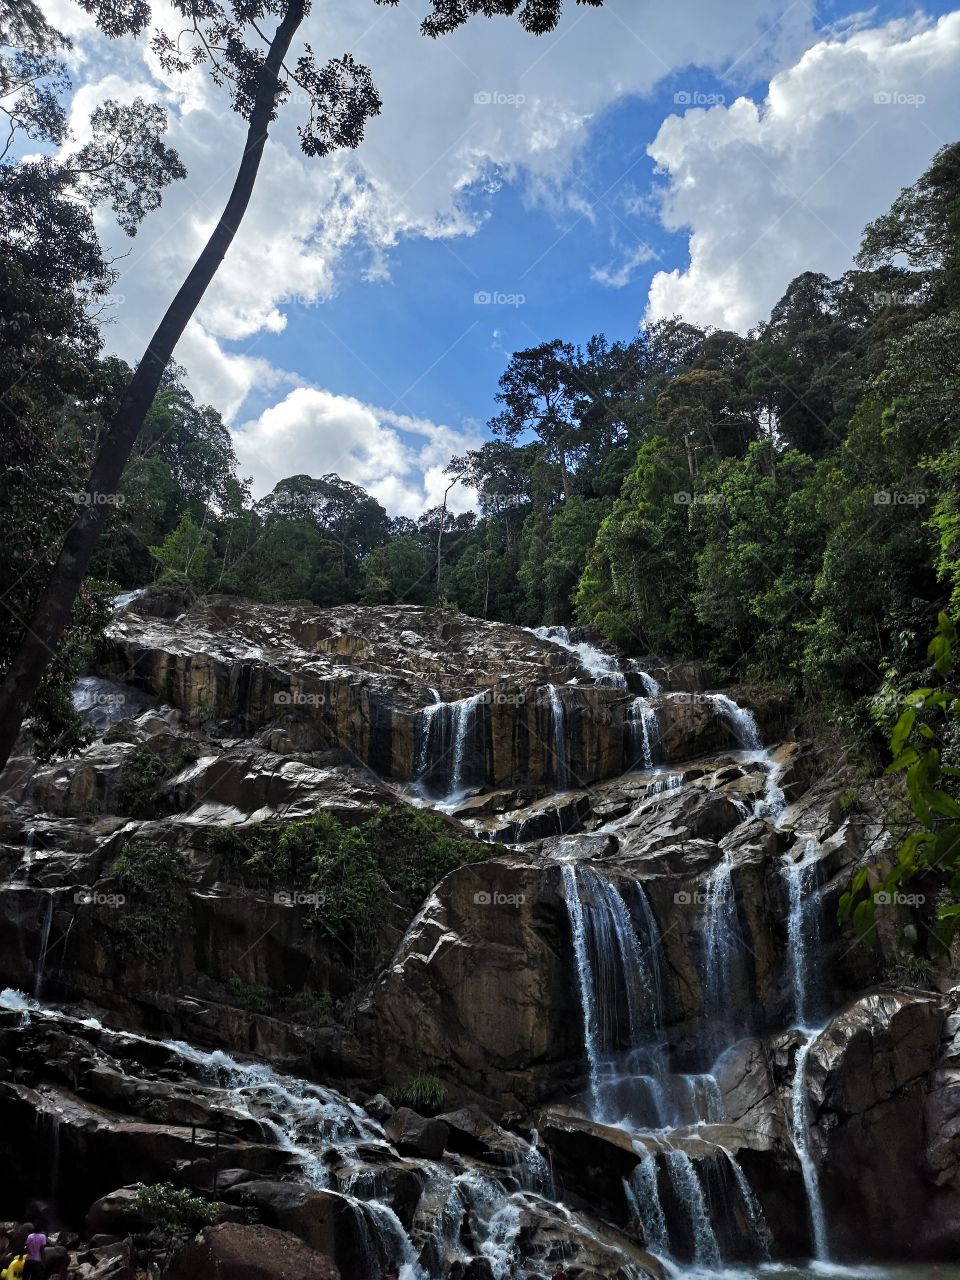 Sungai Pandan Waterfall, Pahang, Malaysia.